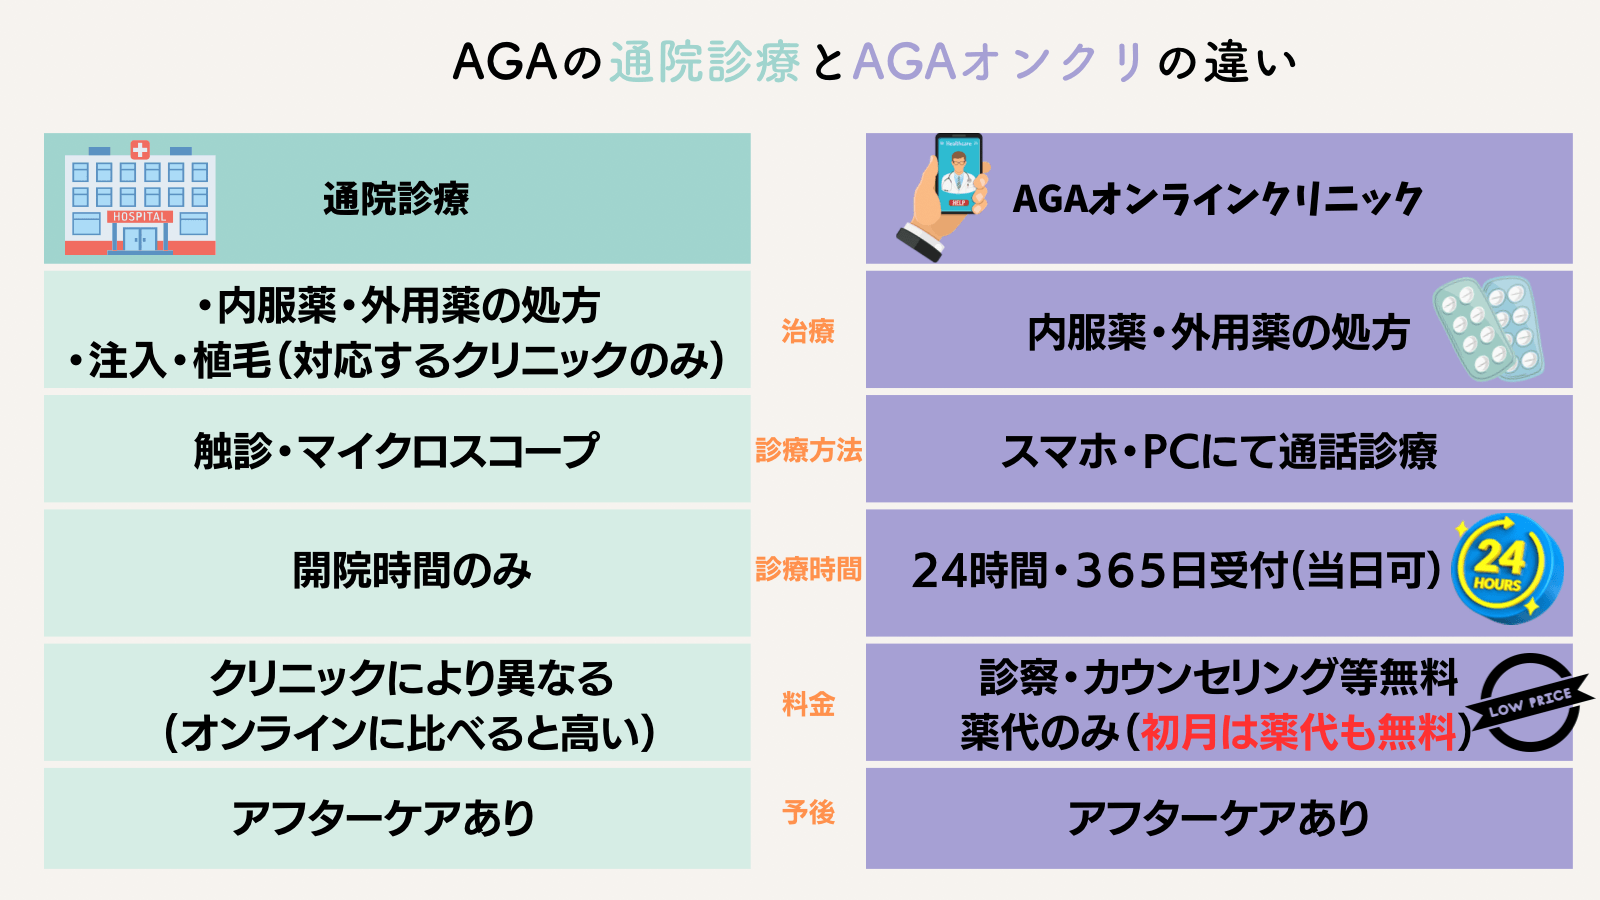 通院型のAGA診療とAGAオンラインクリニックとの比較(違い)